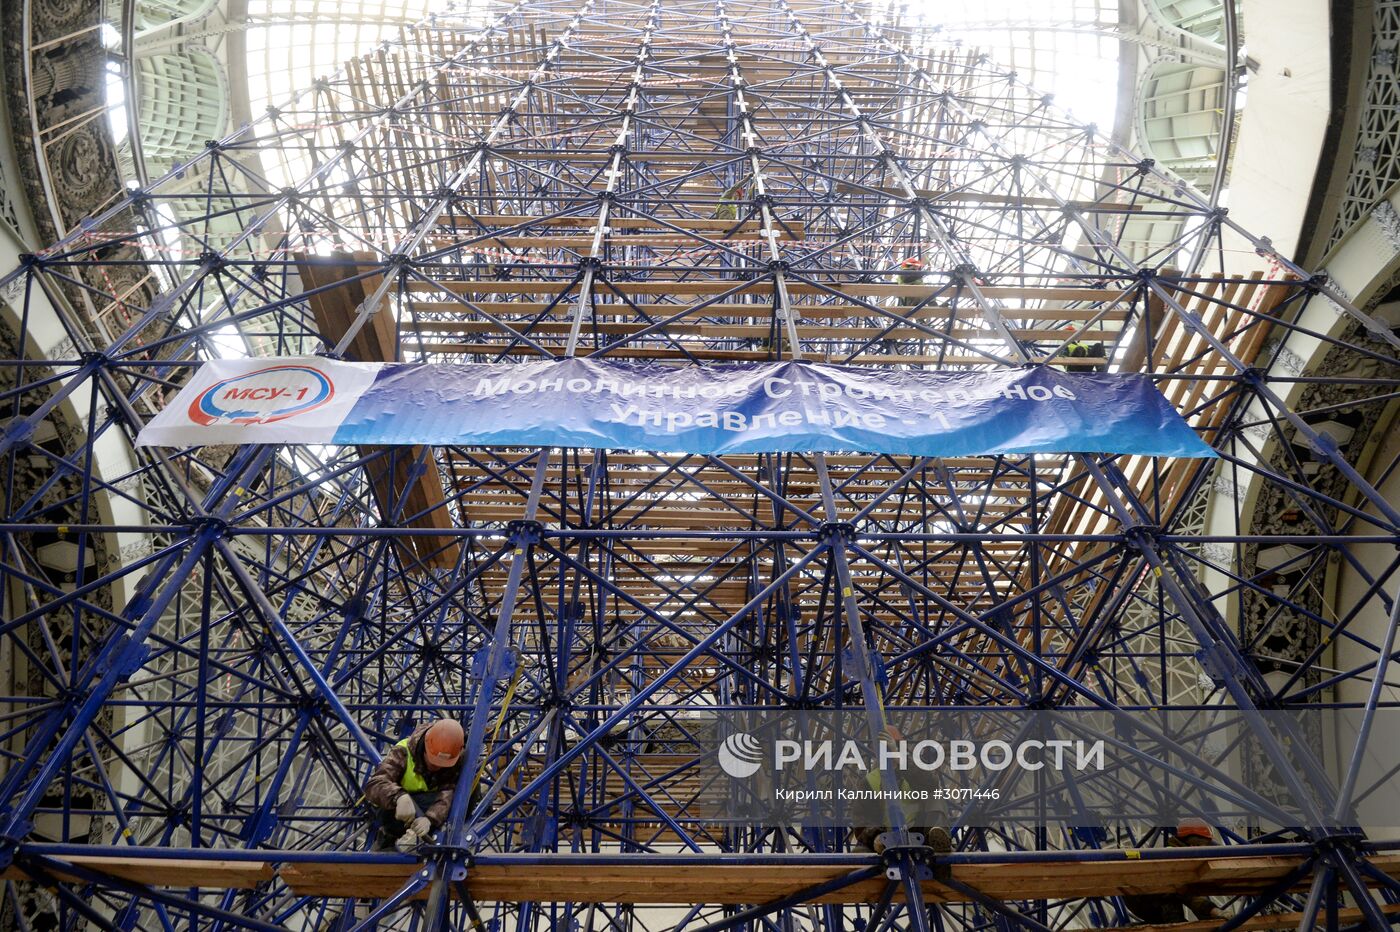 Реконструкция павильона "Космос" на ВДНХ